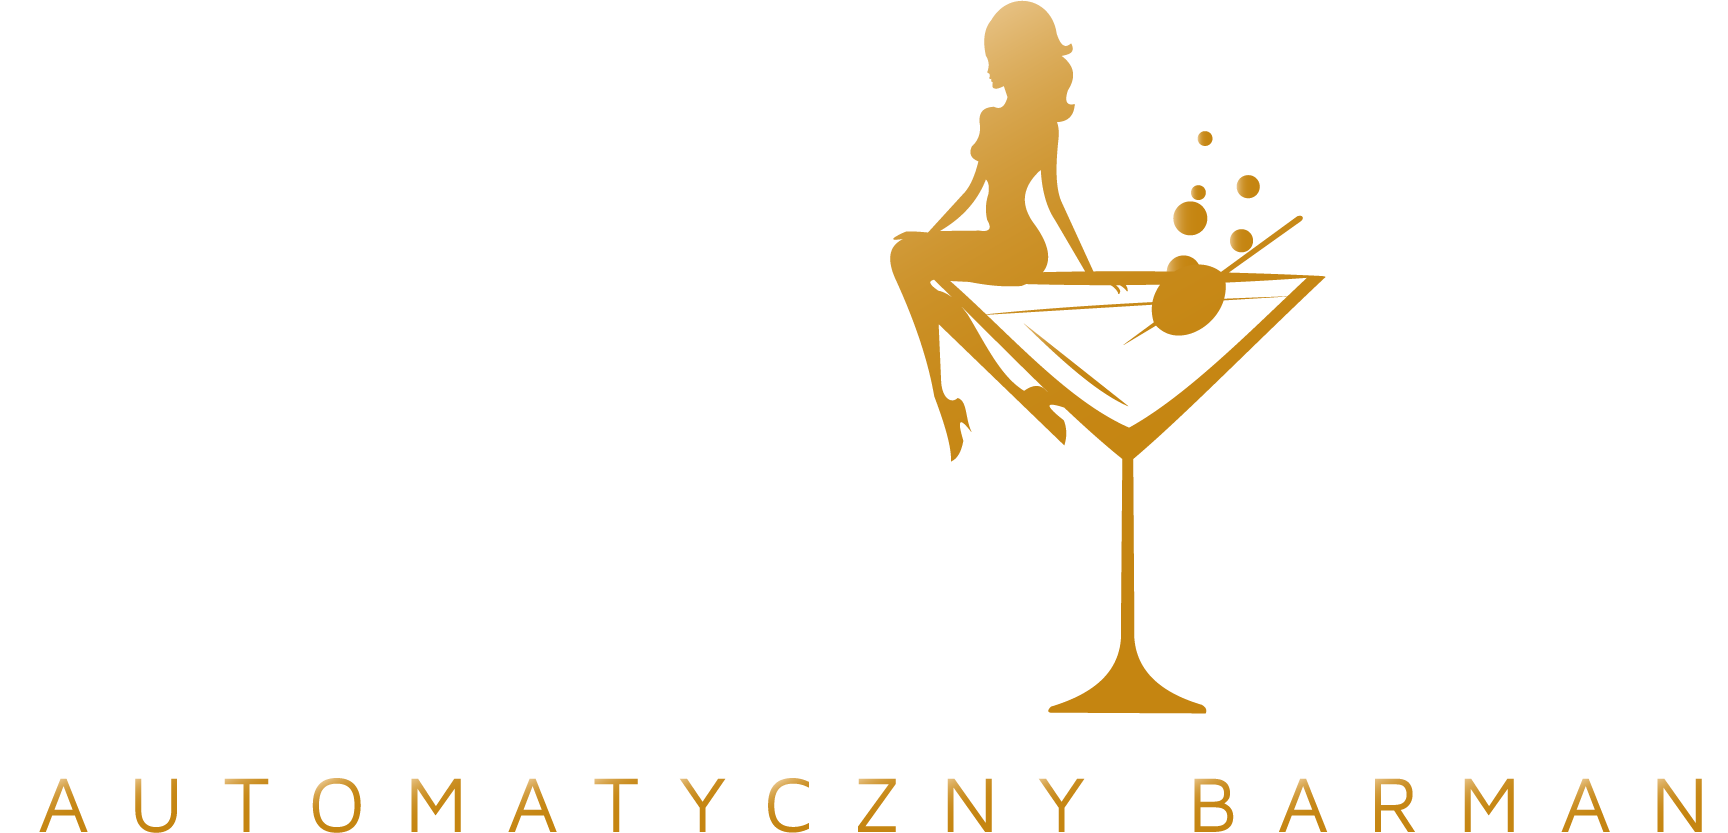 CocktailMix - Automatyczny Barman